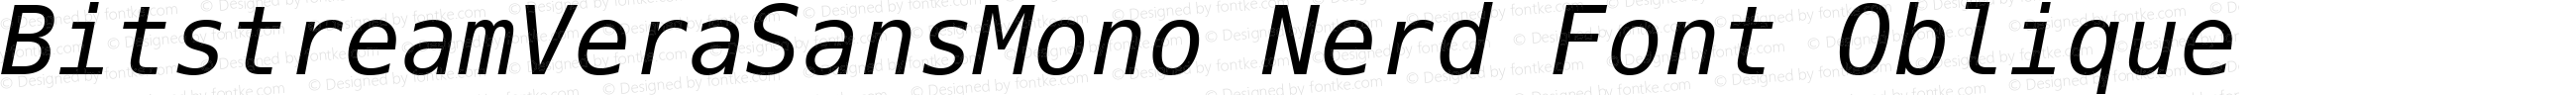 Bitstream Vera Sans Mono Oblique Nerd Font Plus Font Awesome Plus Octicons Plus Pomicons Plus Font Linux Mono